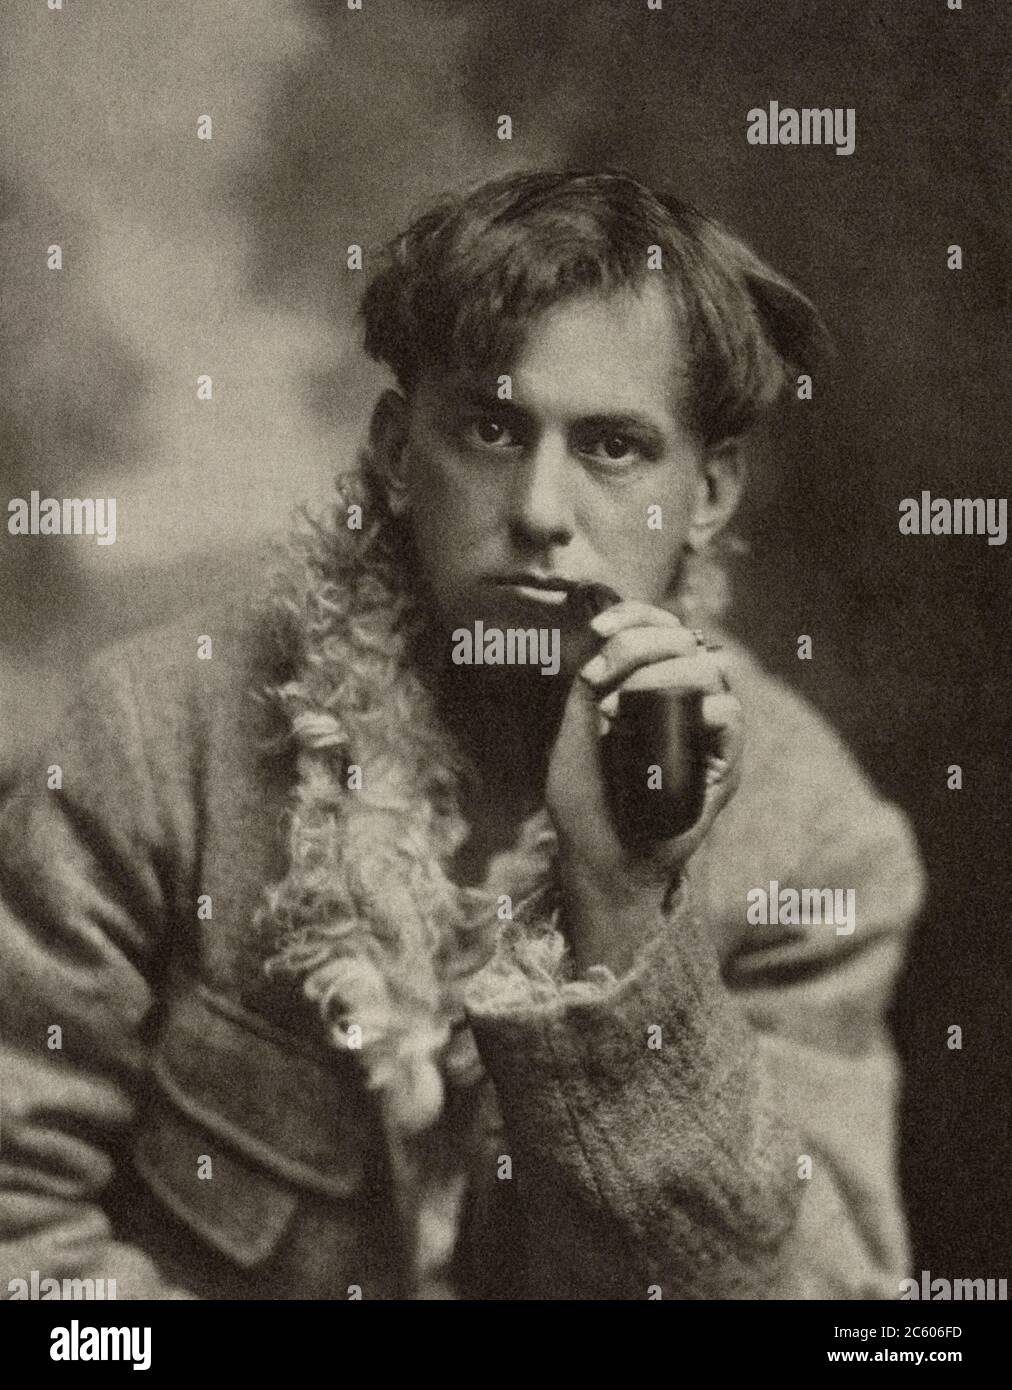 Le jeune Aleister Crowley (né Edward Alexander Crowley, 1875 – 1947) est un octogateur anglais, magicien cérémoniel, poète, peintre, romancier et mounta Banque D'Images